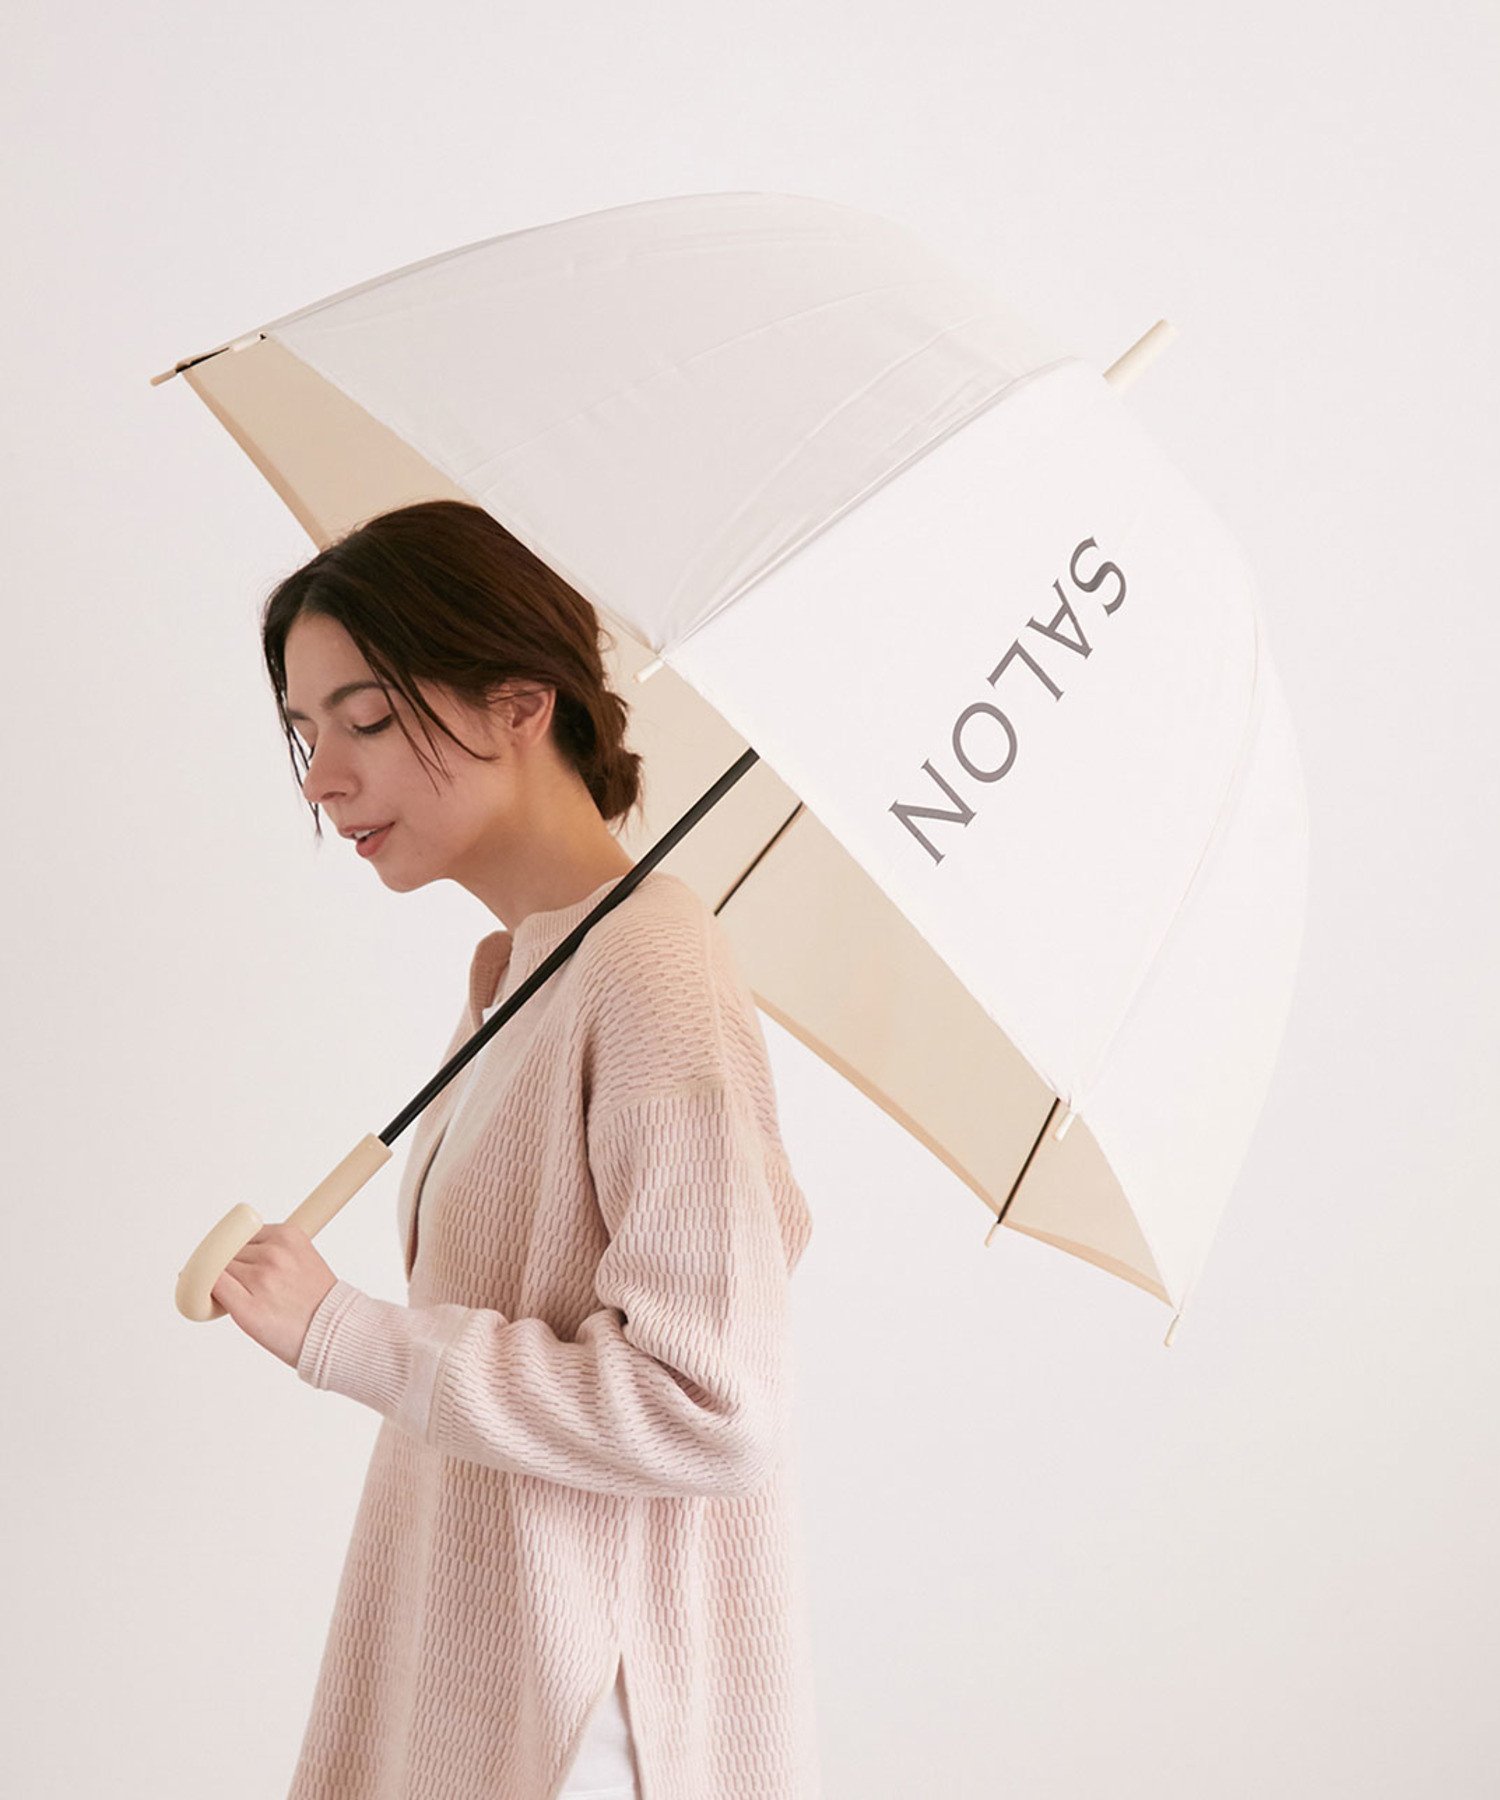 雨でも気分が上がる プチプラ傘がカワイイ件 何を買っていいかわからない 40代の服選び Akane S Happy Coordinate